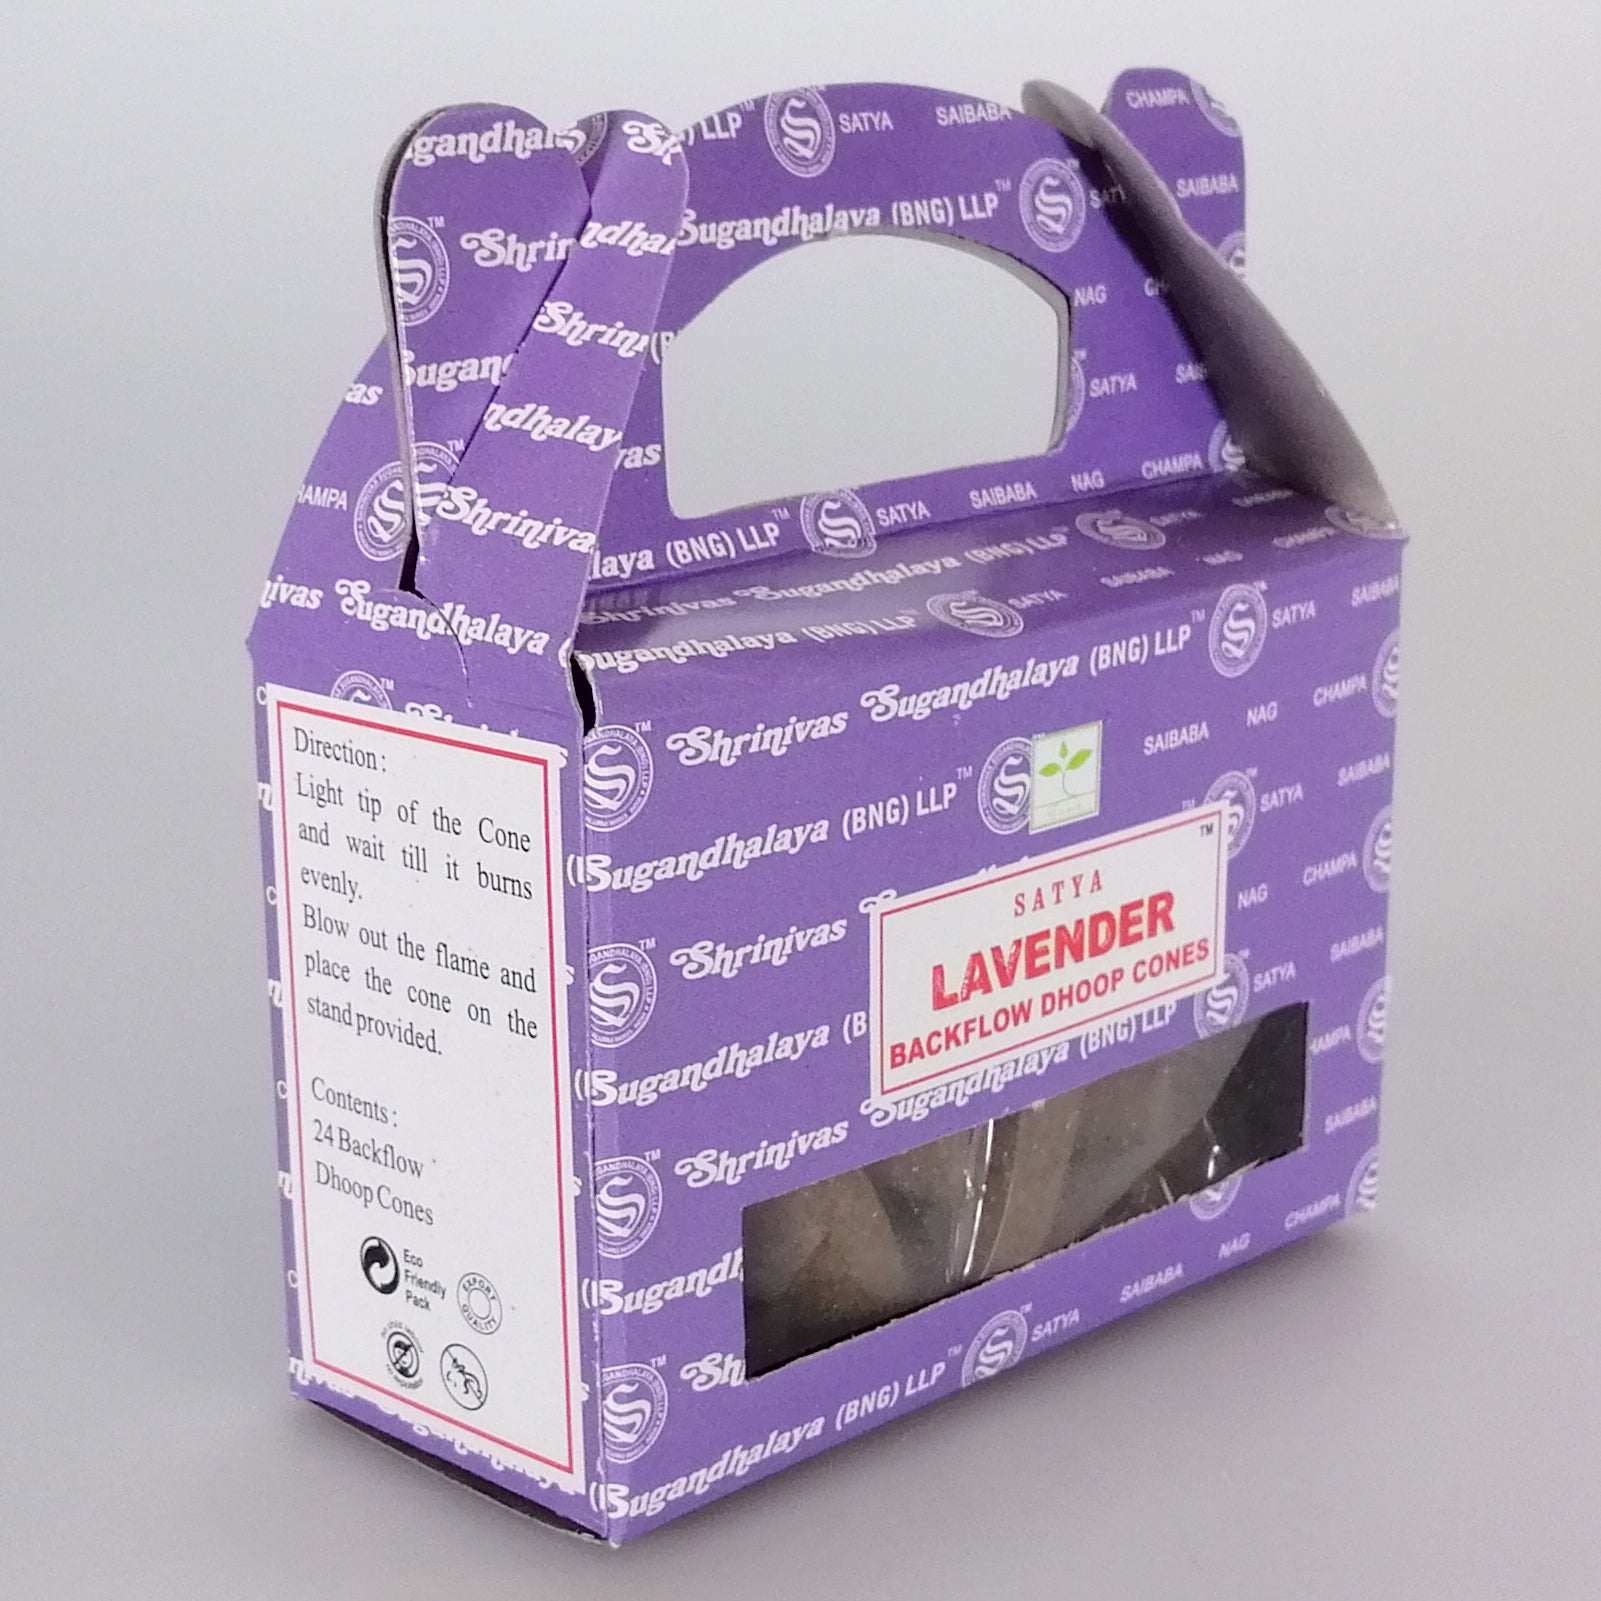 Satya Backflow Cones - Lavender